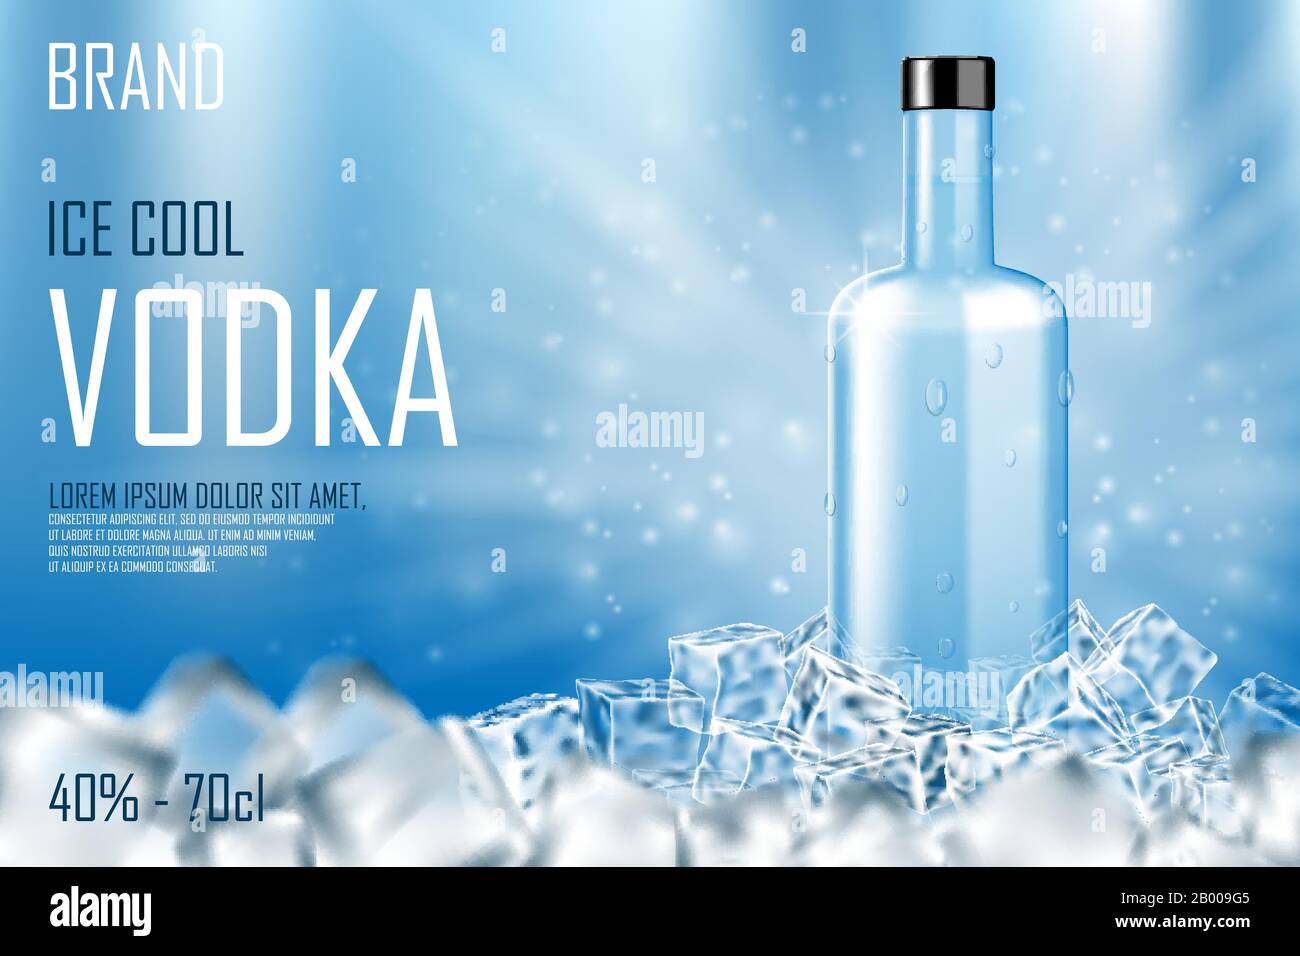 Wodka Flasche mit Eiswürfel Anzeige. Starker Alkoholtrunk verspottet auf glänzend blauem Grund und Wassertropfen. Werbebanner für Wodka. Realistischer 3D-Vektor Stock Vektor